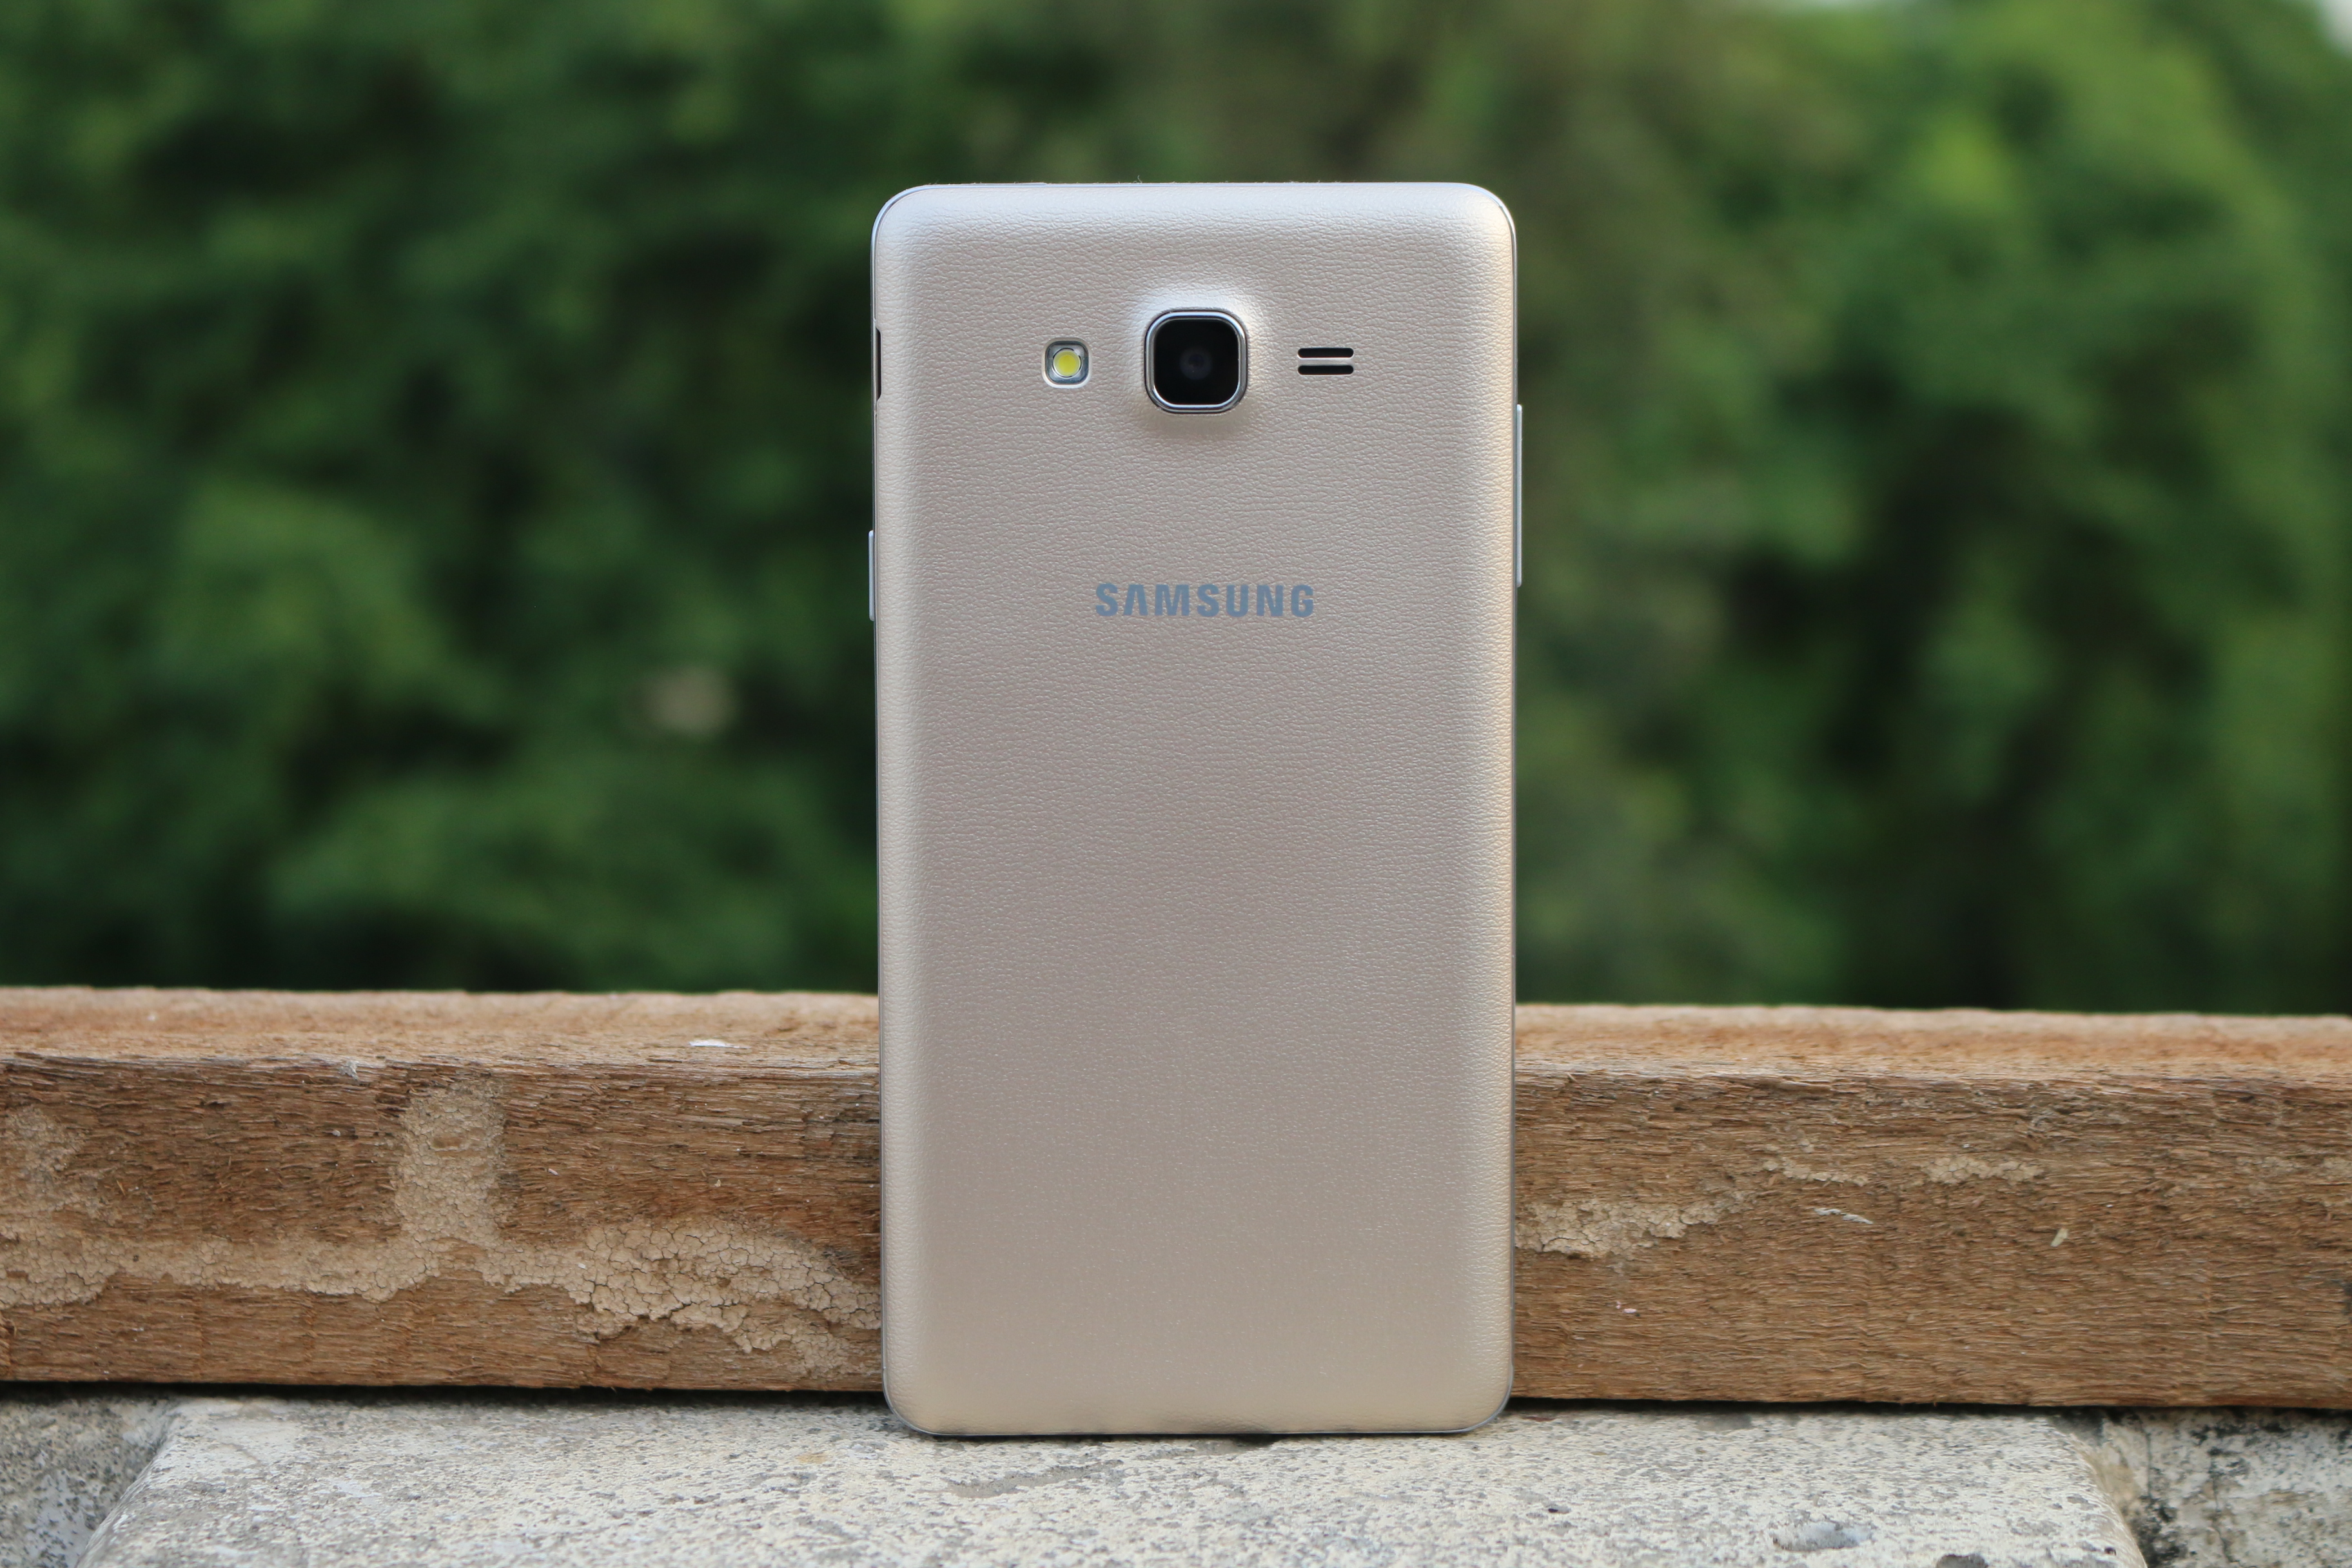 שאלות נפוצות על Samsung Galaxy On7 Pro, יתרונות וחסרונות, שאילתות משתמשים ותשובות